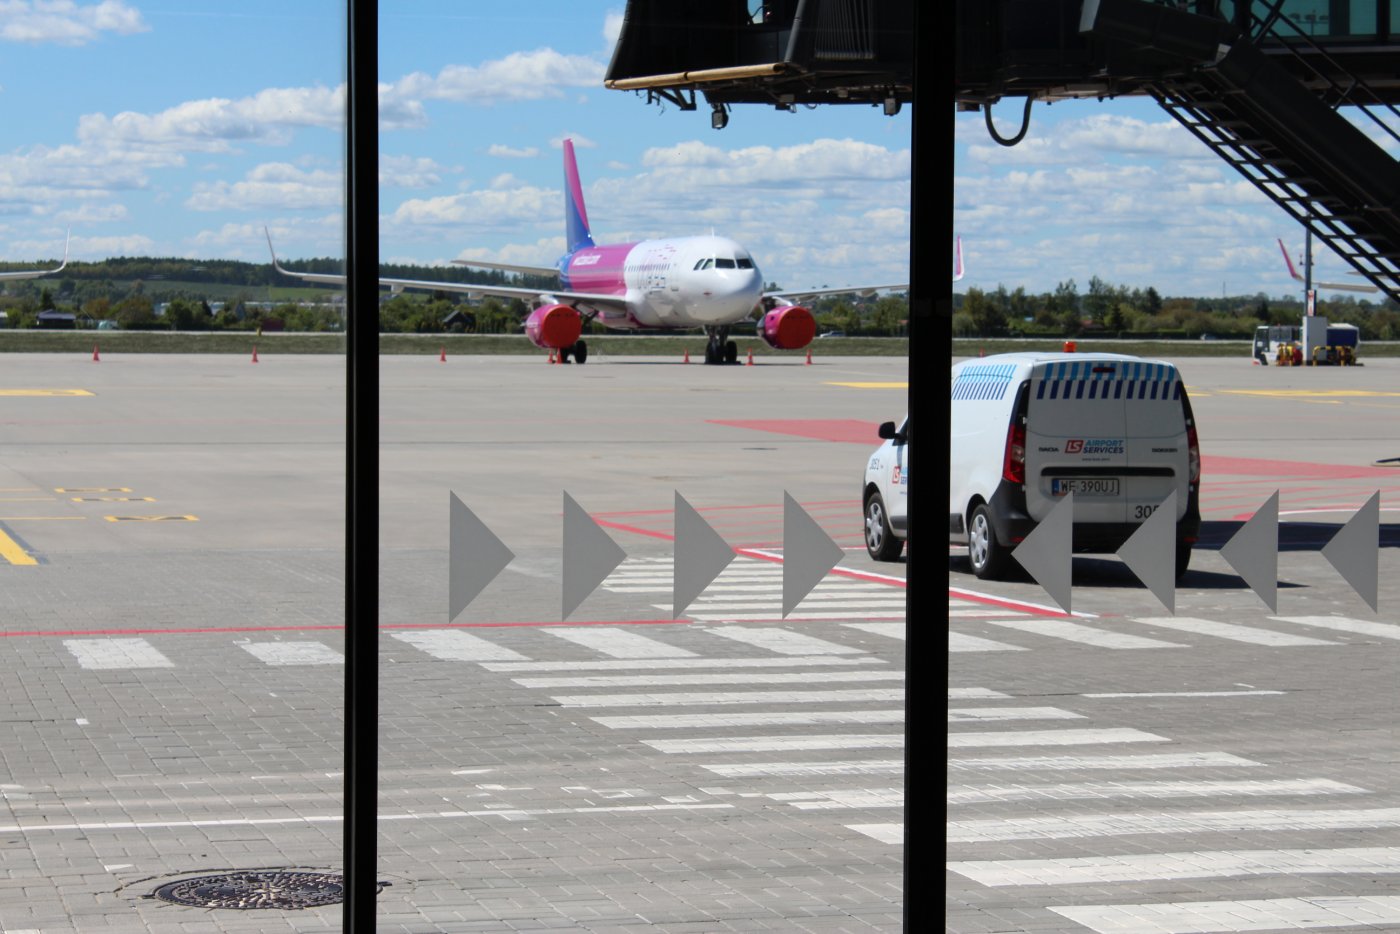 Zdjęcie z Lotniska im. Lecha Wałęsy w Gdańsku. Z okna widać pas startowy, samolot oraz samochód.